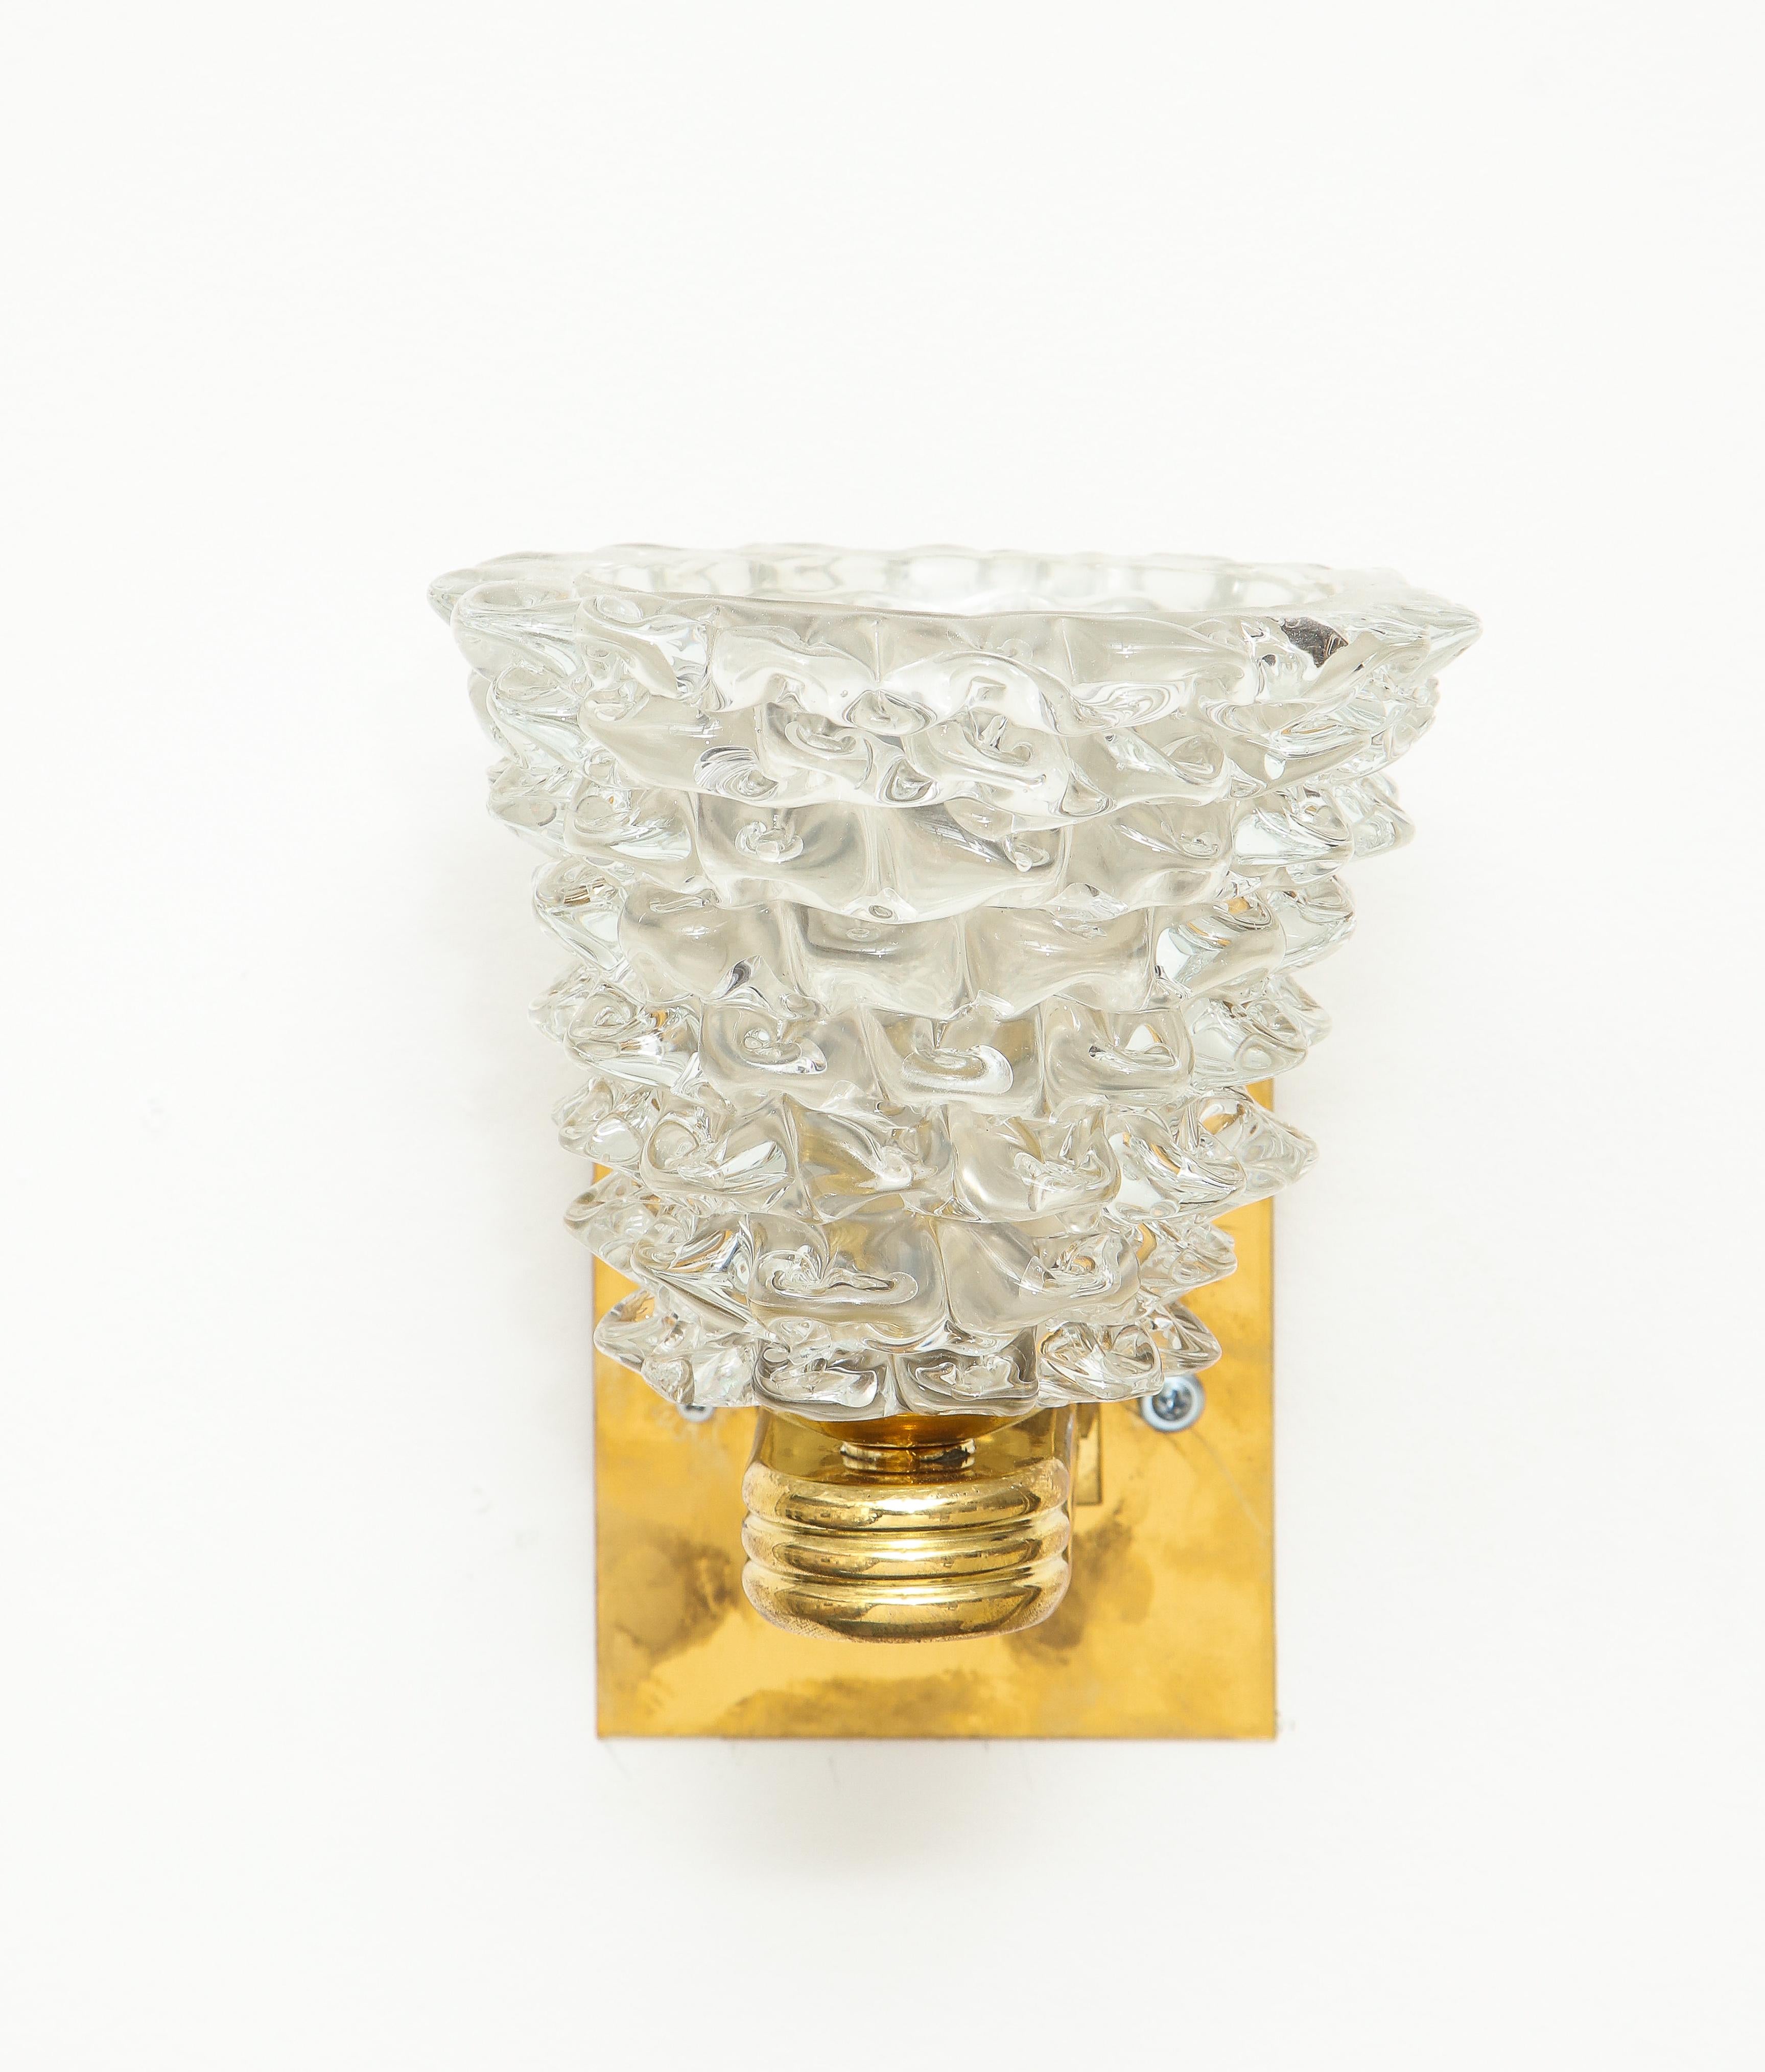 Italian Pair of Bespoke Murano Glass Sconces